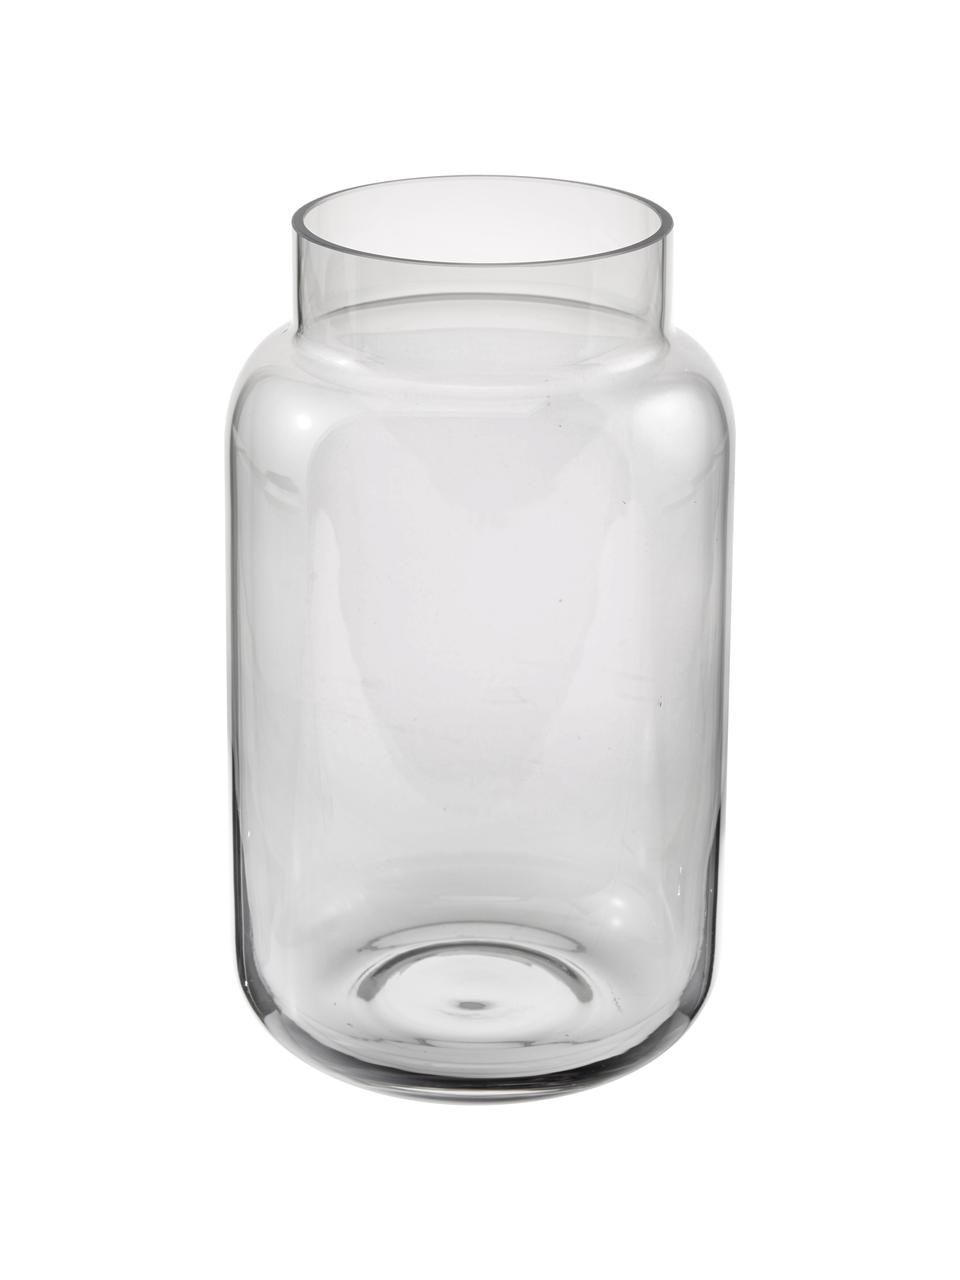 Betreffende matig leeuwerik Grote glazen vaas Lasse van glas | Westwing